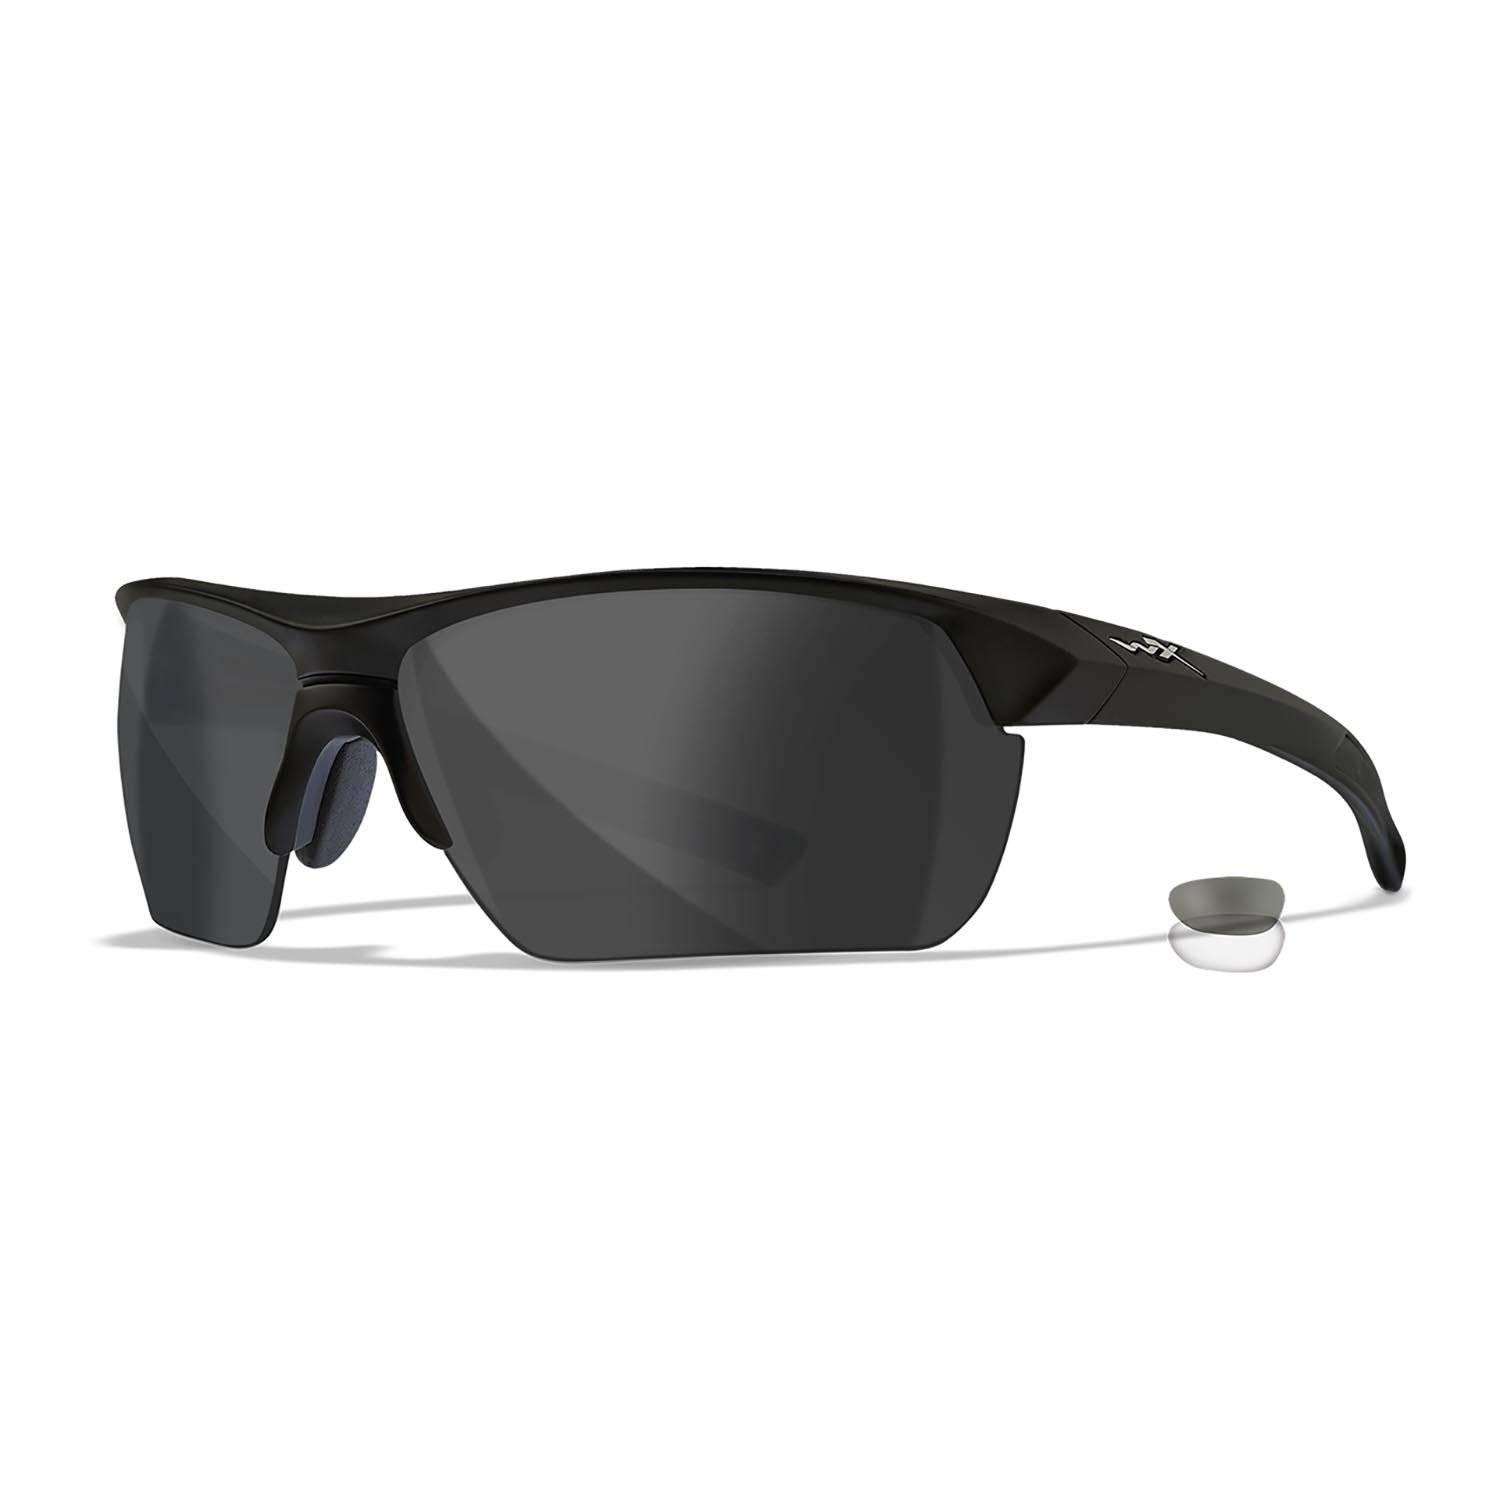 Wiley X Guard Advanced Sunglasses